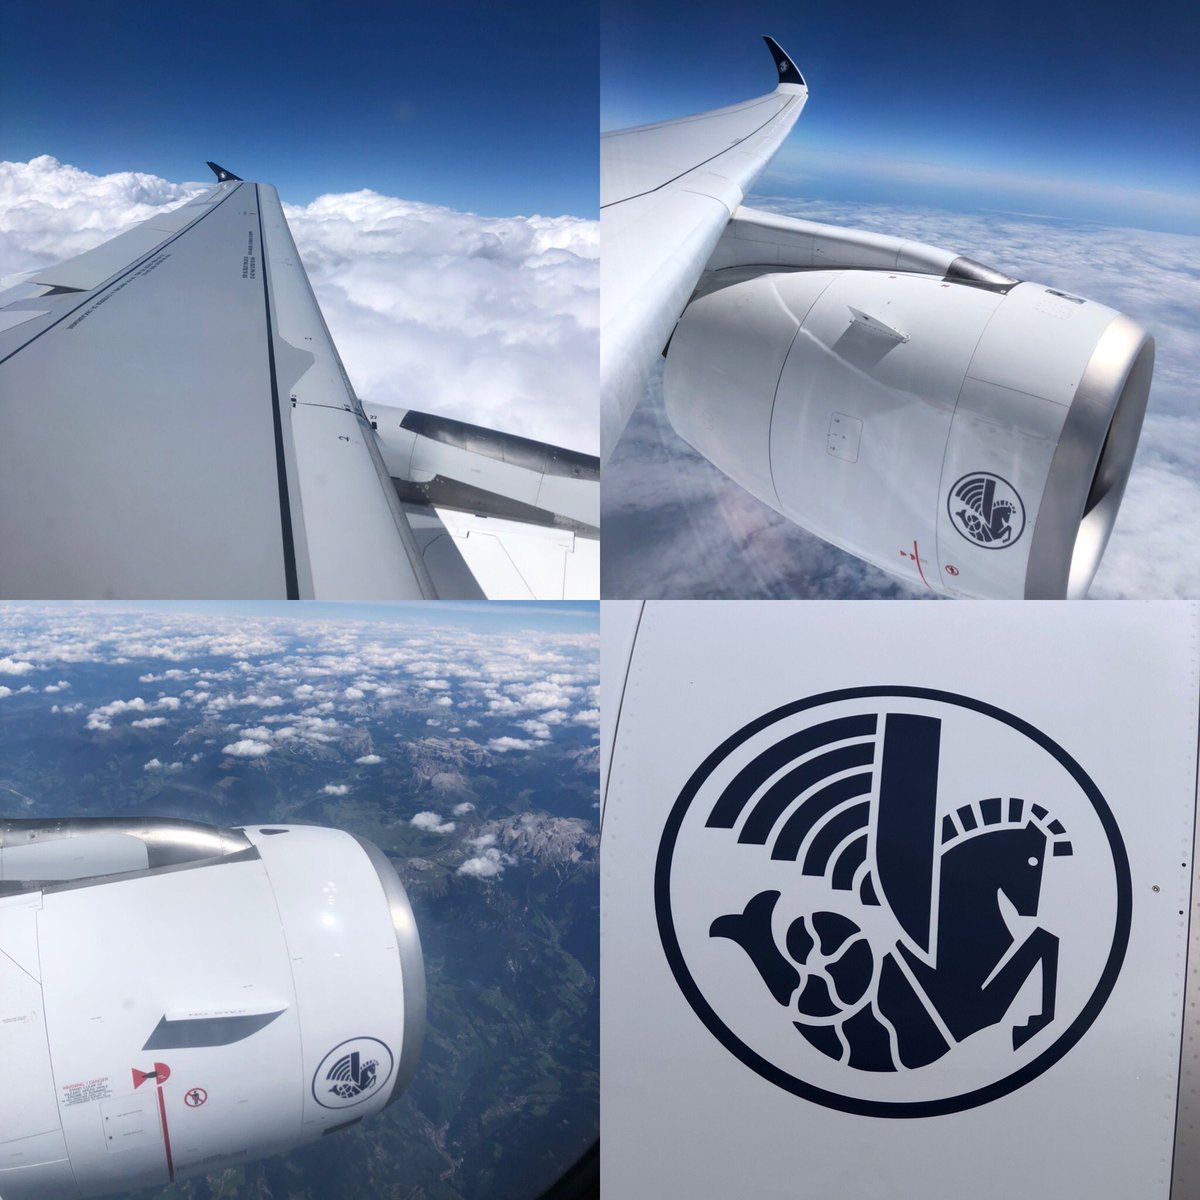 Sur le #CFM56 et les bouts d’ailes de l’#A320 ou sur le #TrentXWB et les Winglets de l’ #A350 la “crevette” hippocampe ailé logo @airfrance  #AvGeek @pilotes_af @HugoPossamai #airfrance